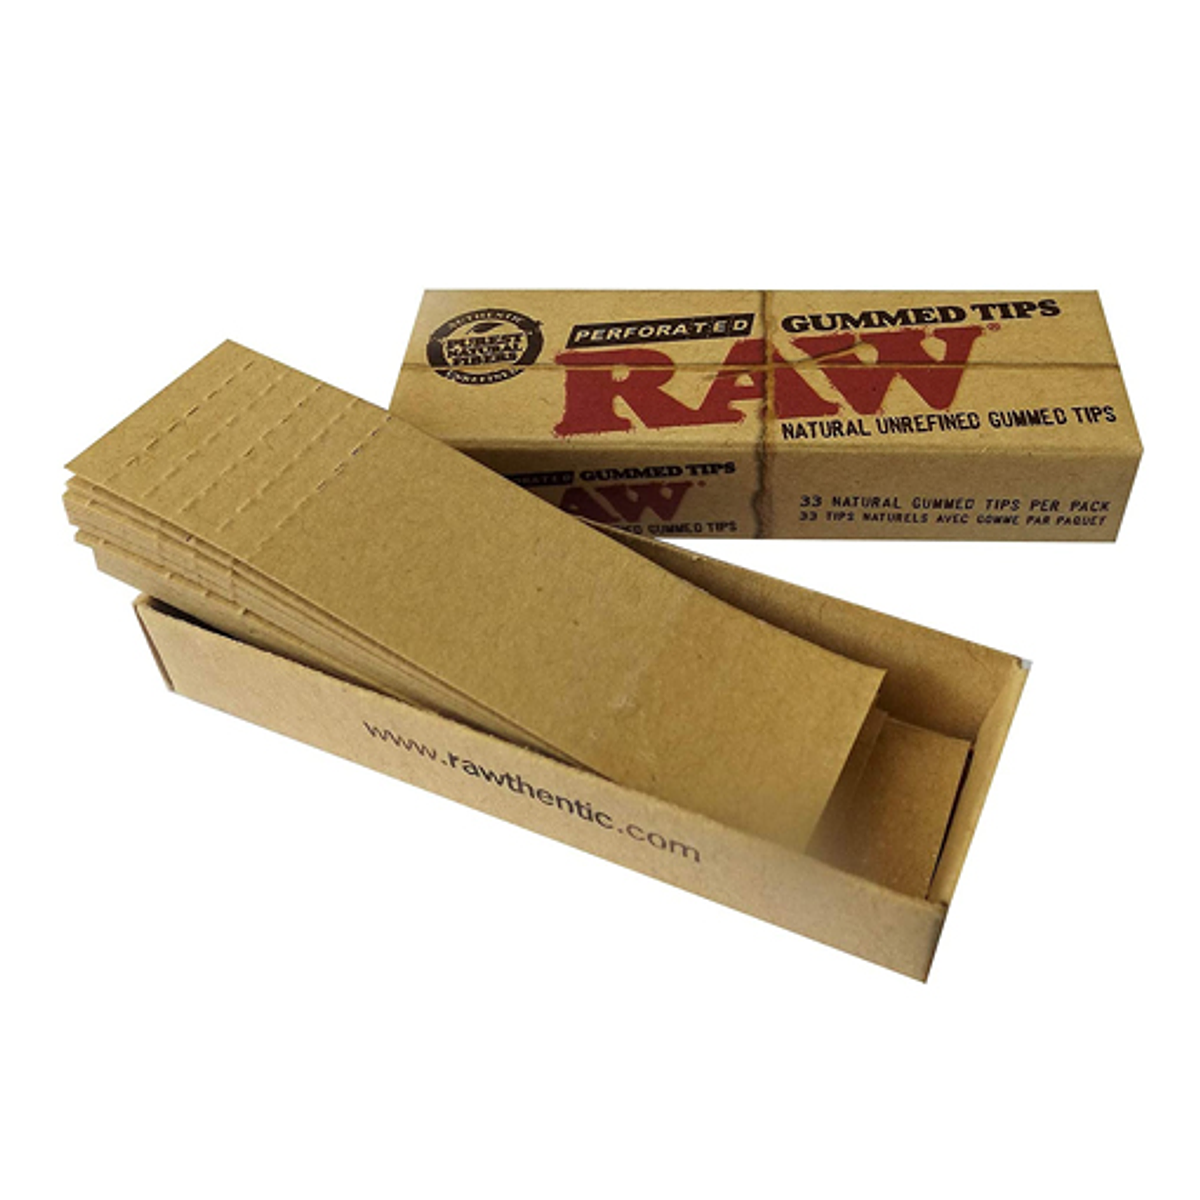 🔥GUMMED TIPS RAW🔥 Filtros raw hechos de fibra larga sin blanquear de  forma natural, para no alterar el sabor de tus joints.😉👌, By Urban  smoker